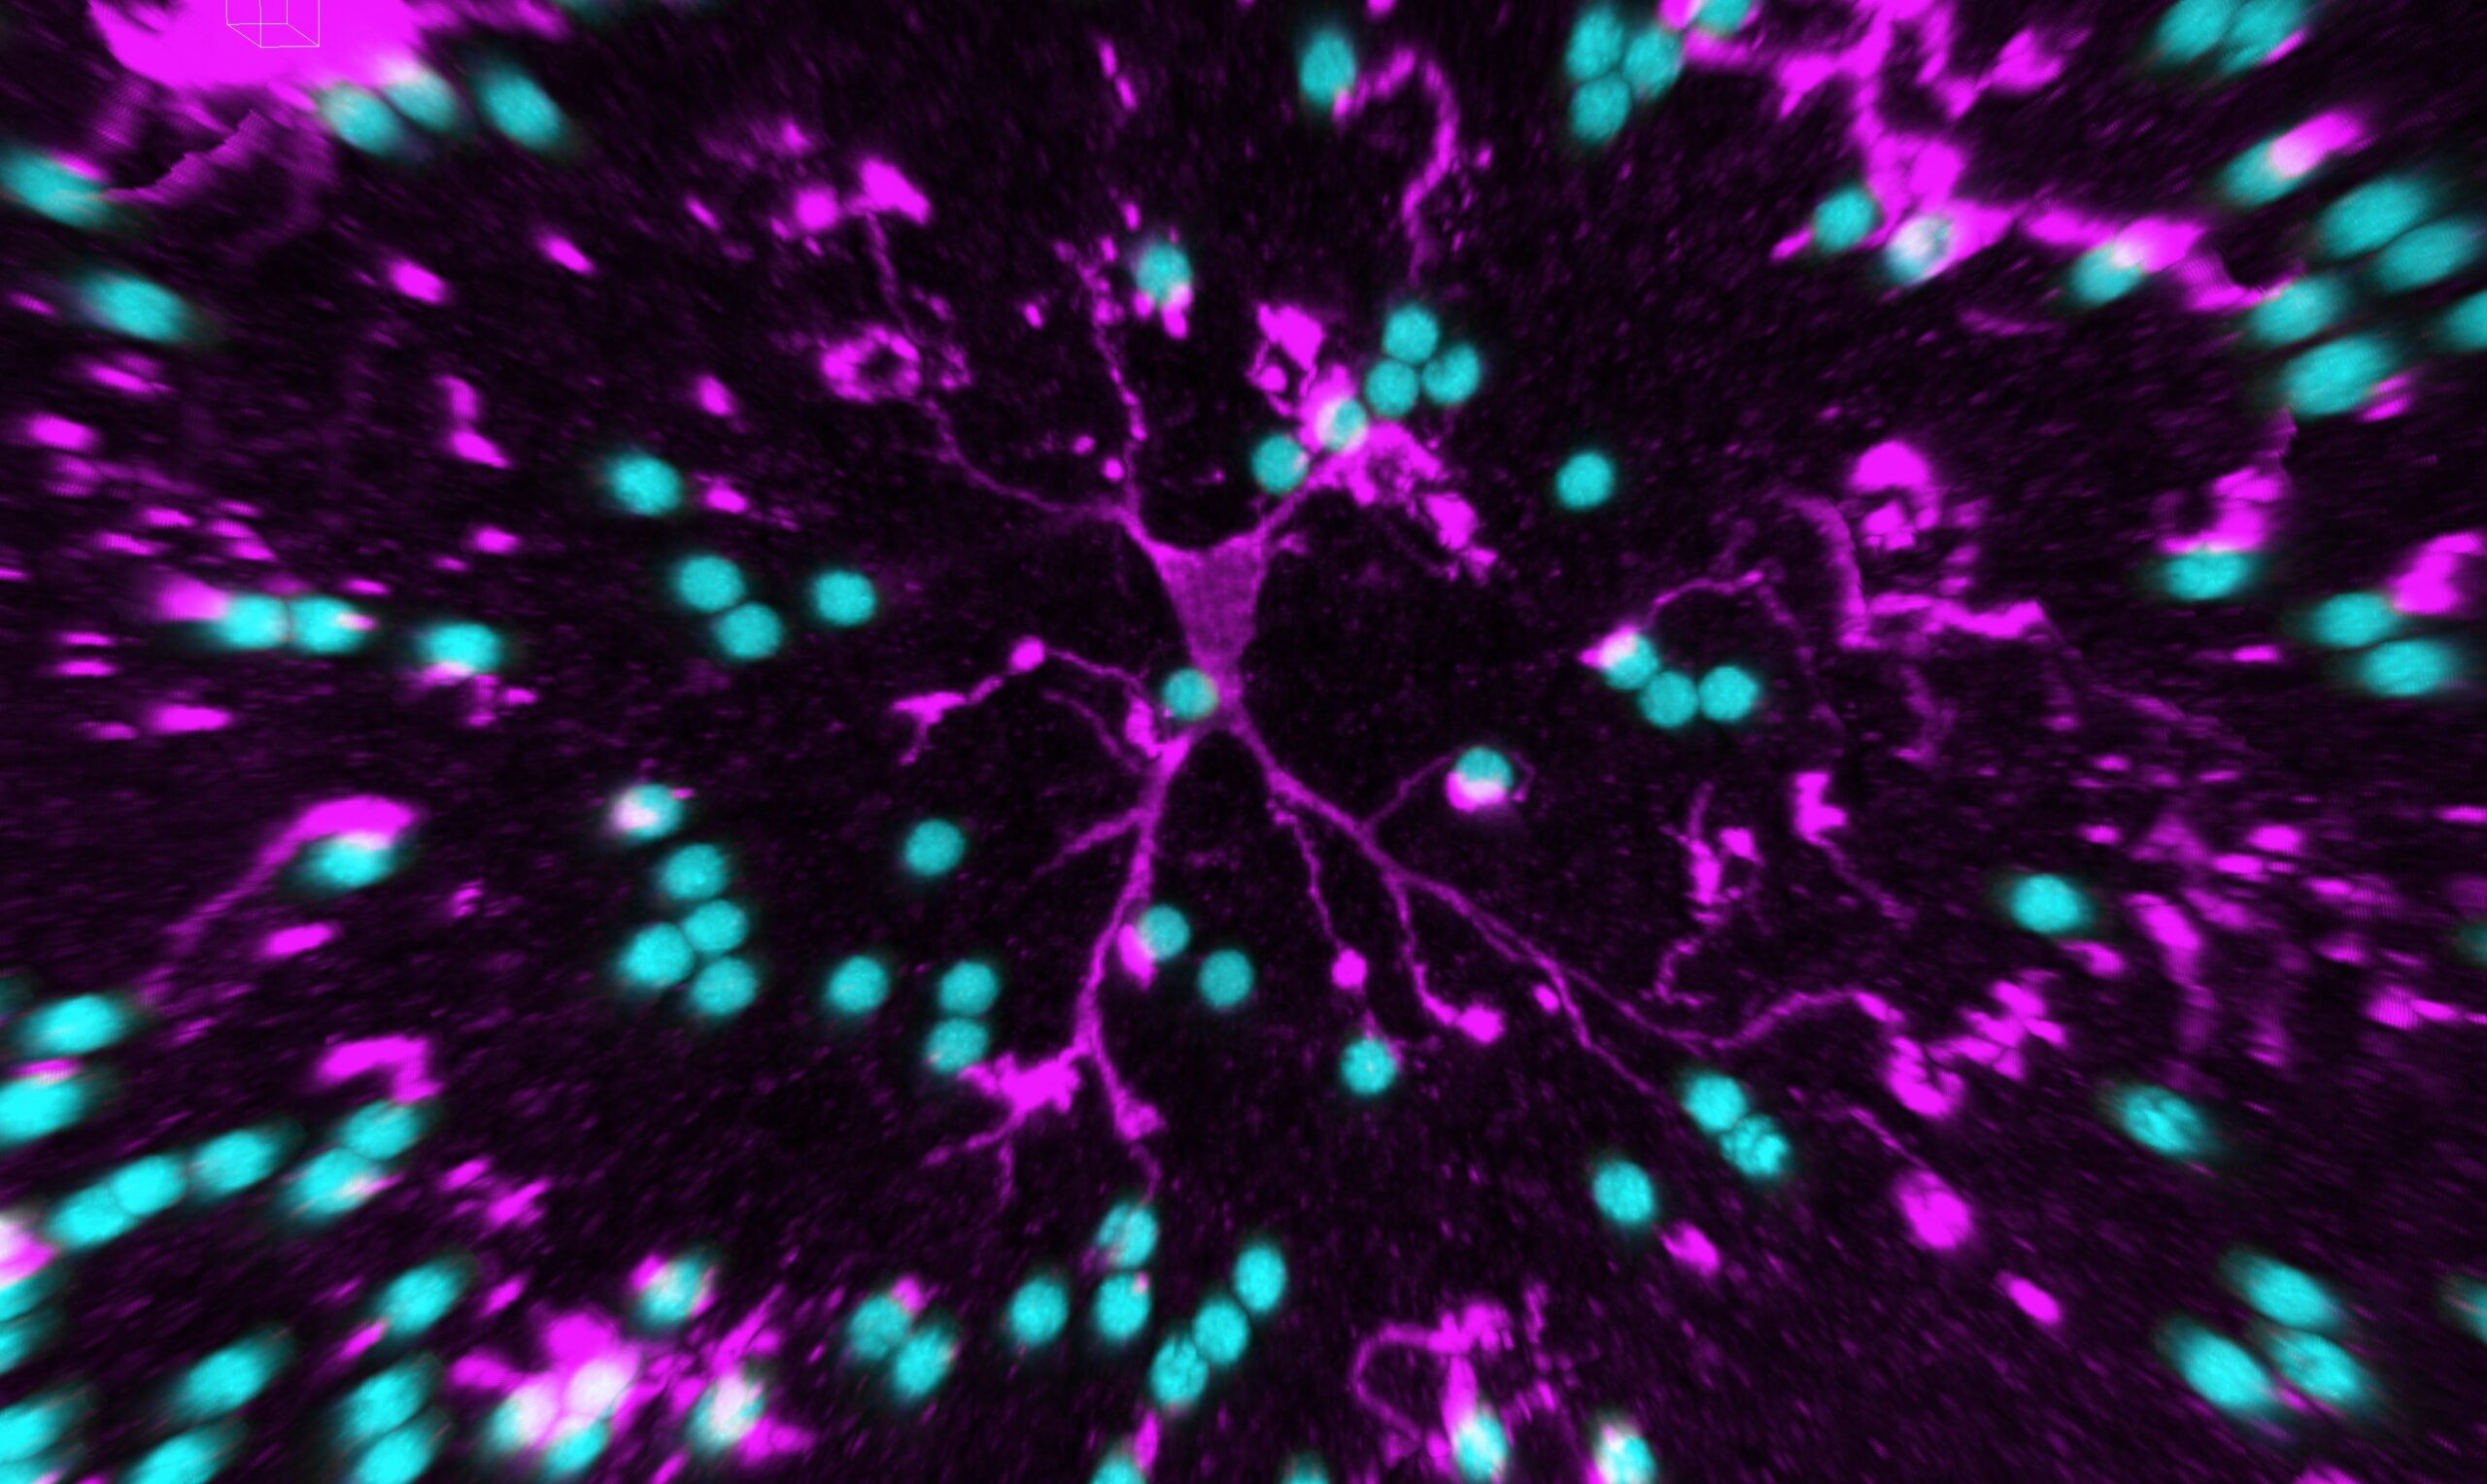 Struktur und Funktion der Mikroglia untersucht